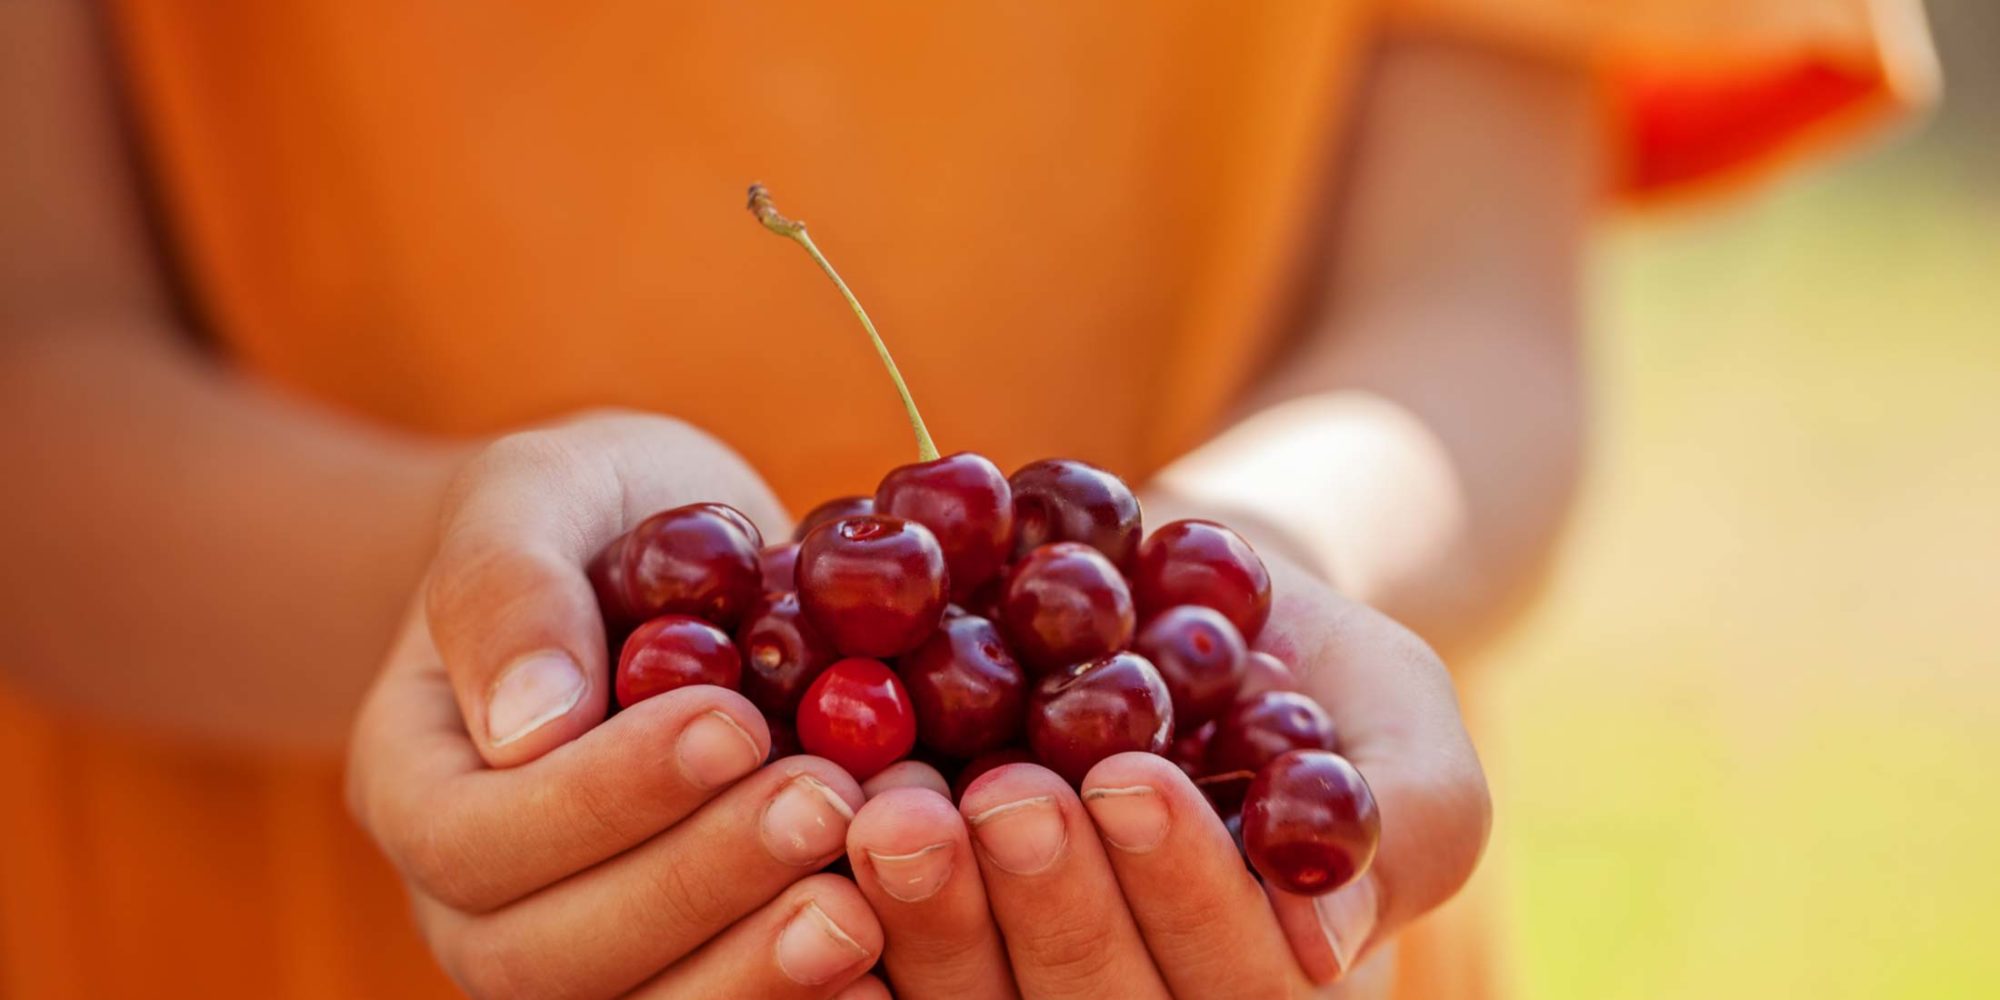 Image of cherries in hands